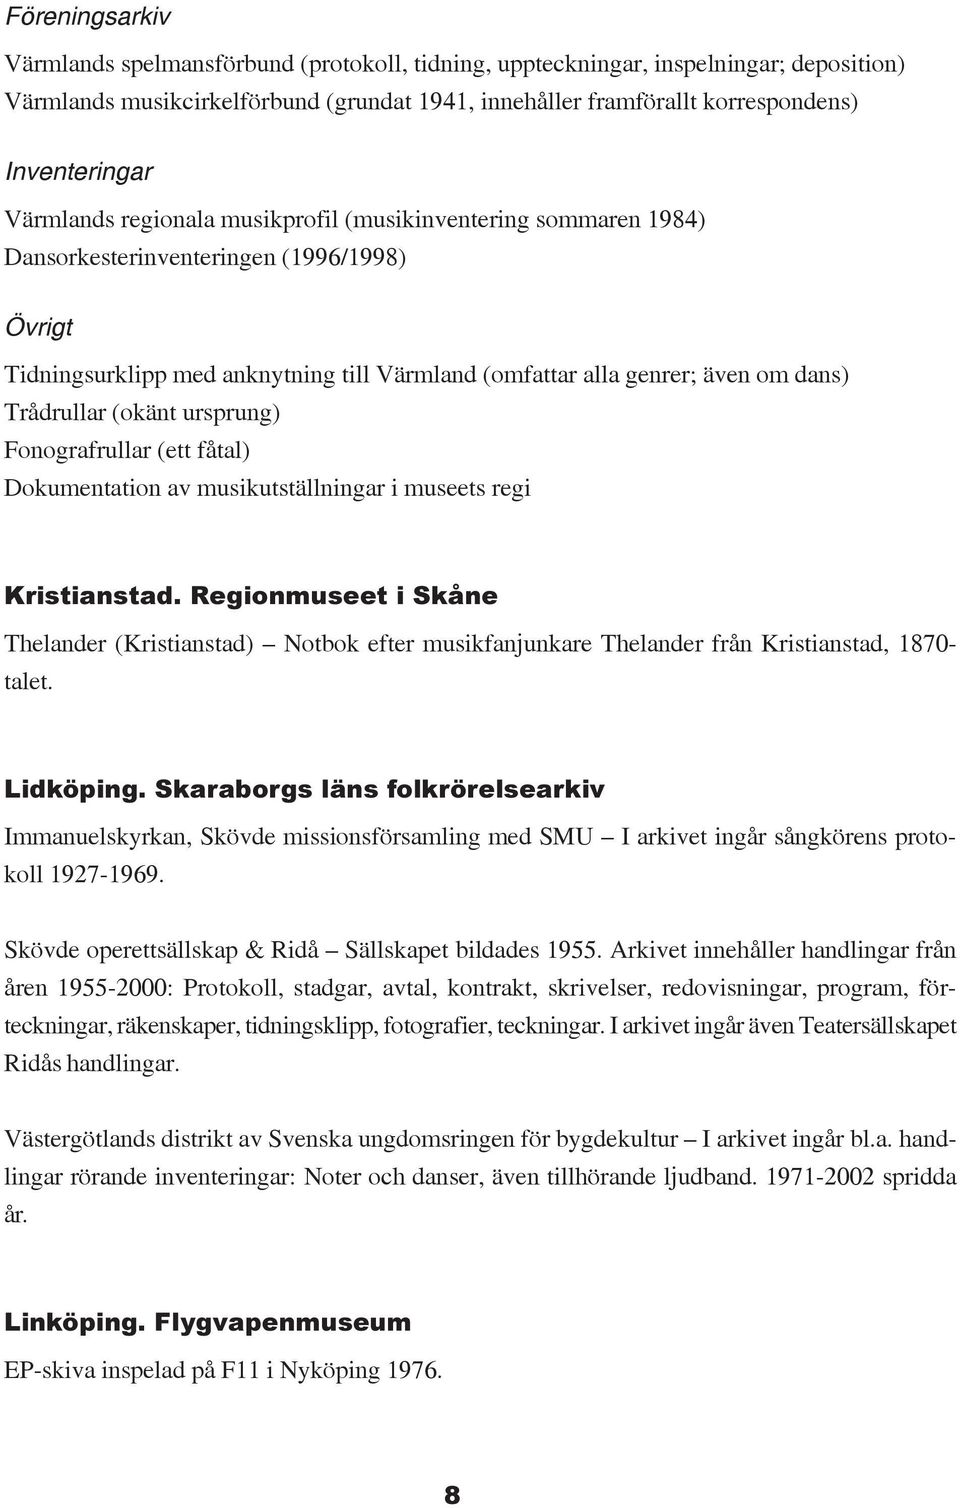 Trådrullar (okänt ursprung) Fonografrullar (ett fåtal) Dokumentation av musikutställningar i museets regi Kristianstad.